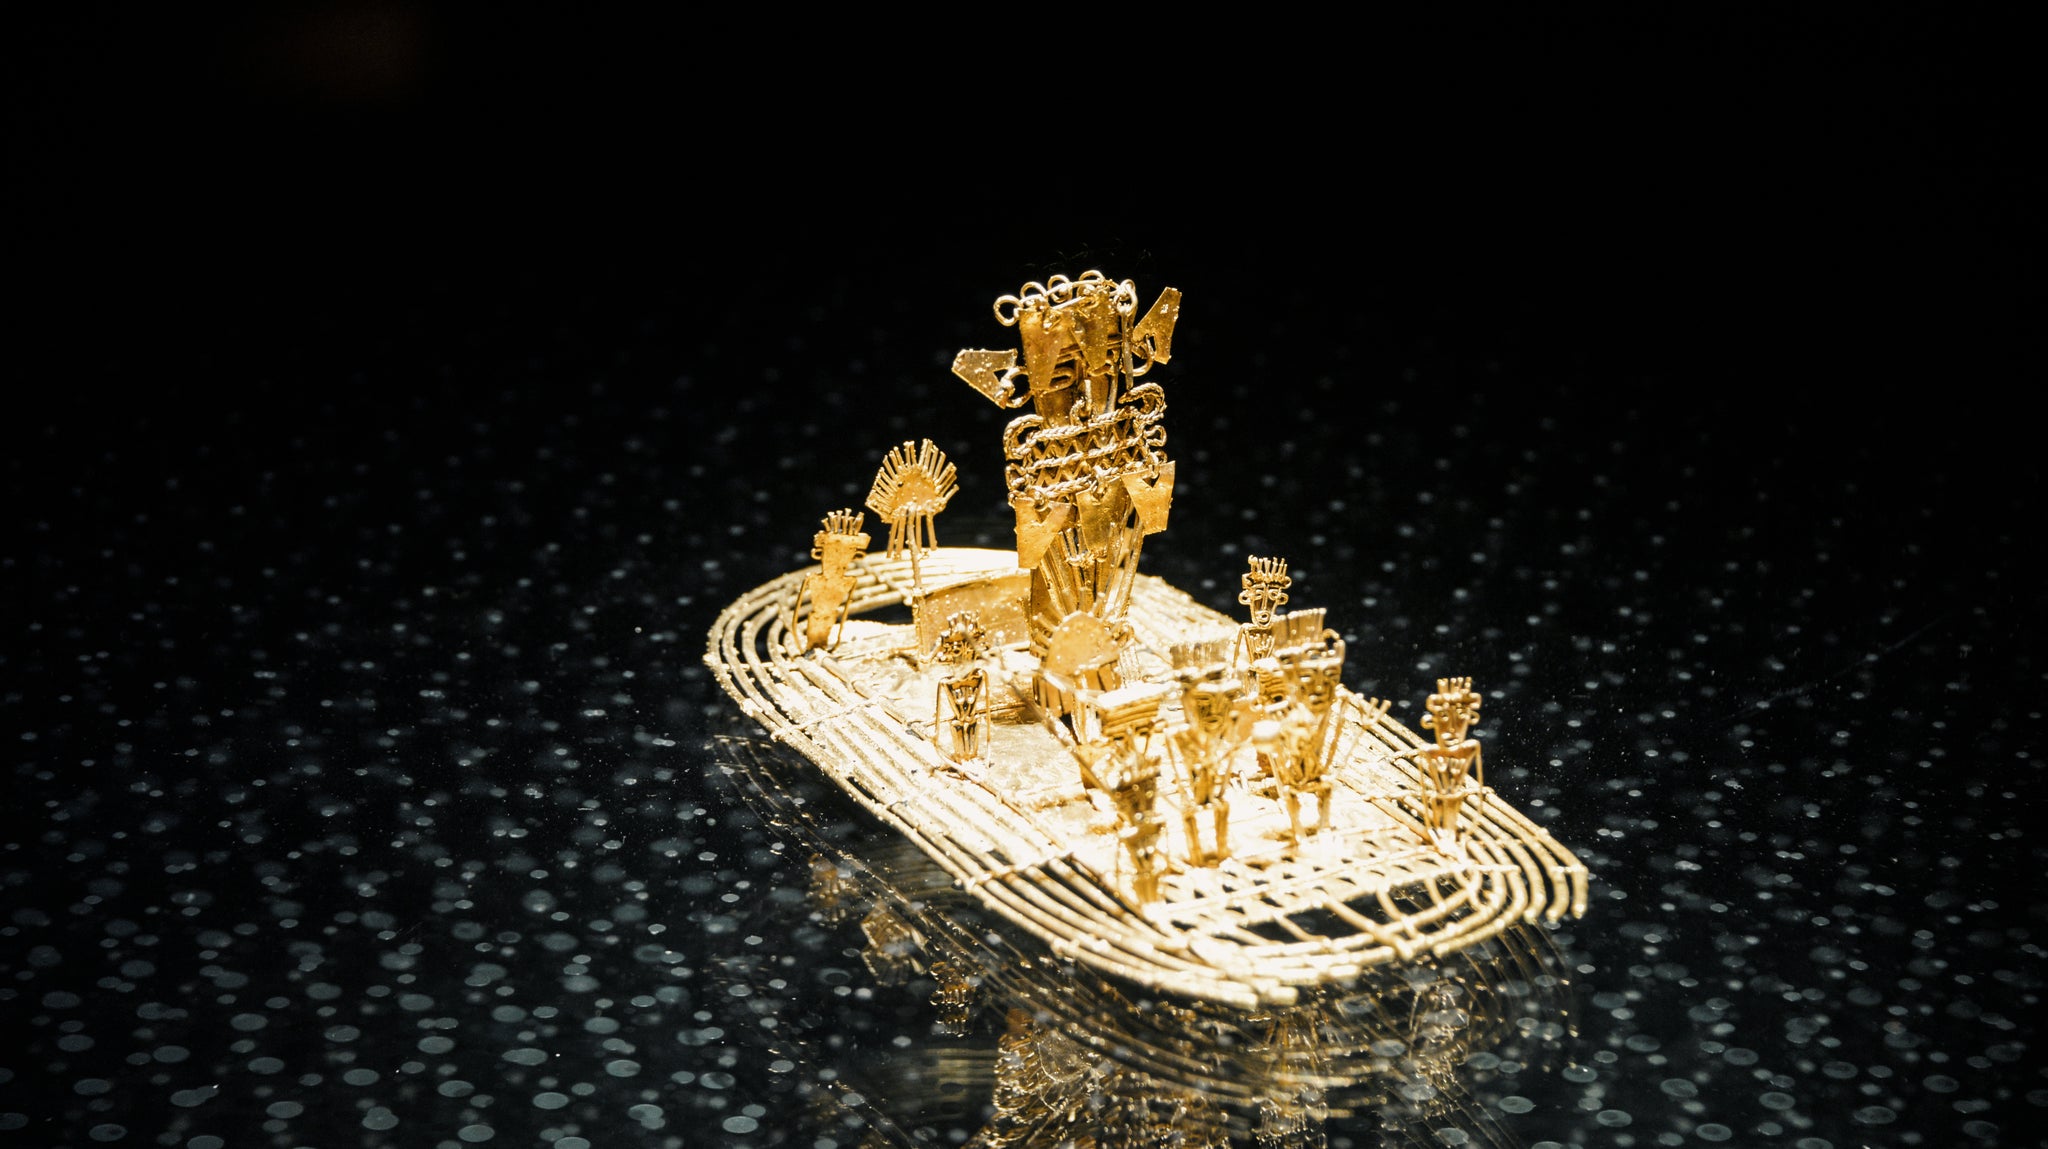 Goldfloß von Eldorado: Ein aus filigranem Gold gefertigtes Floß, 600 n. Chr. – 1600 n. Chr. aus Pasca